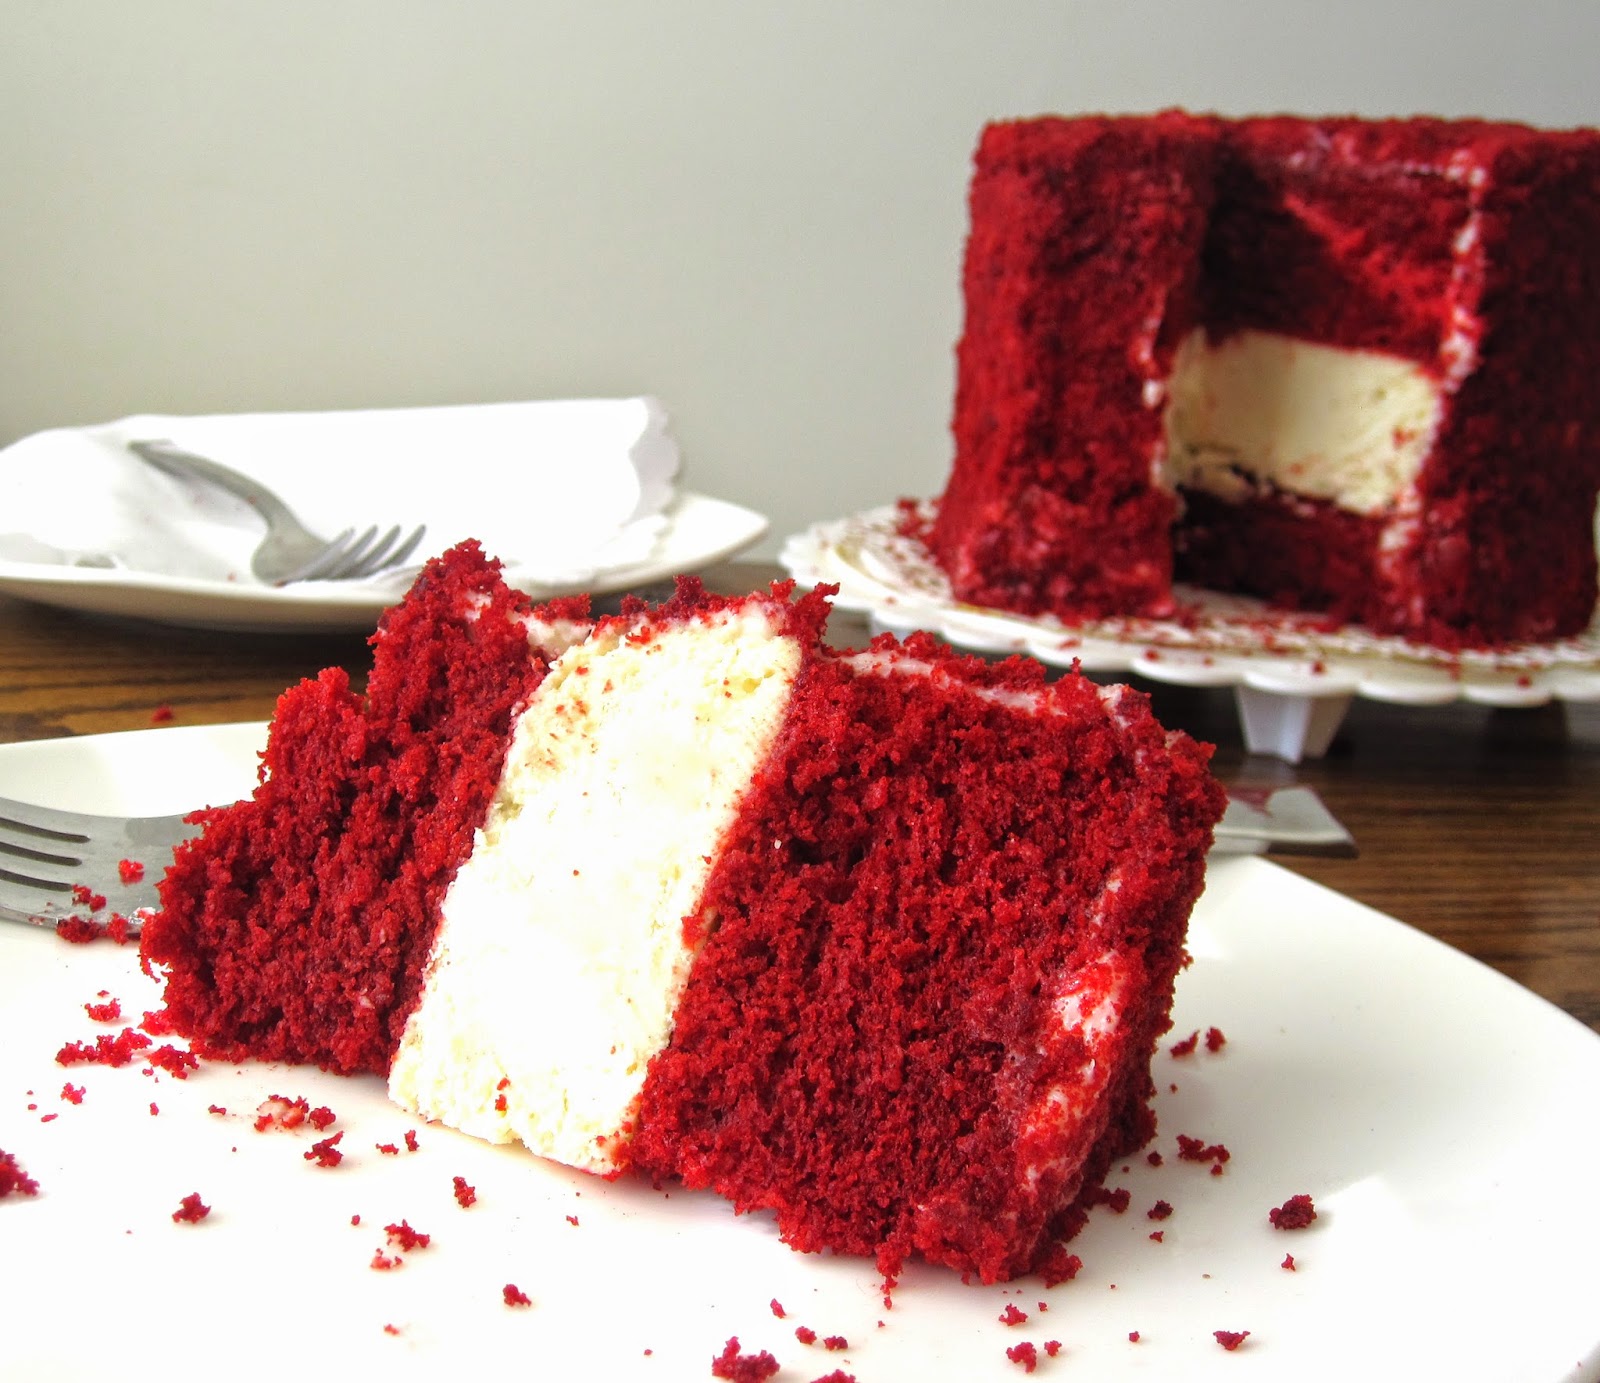 Filled Red Velvet Cake